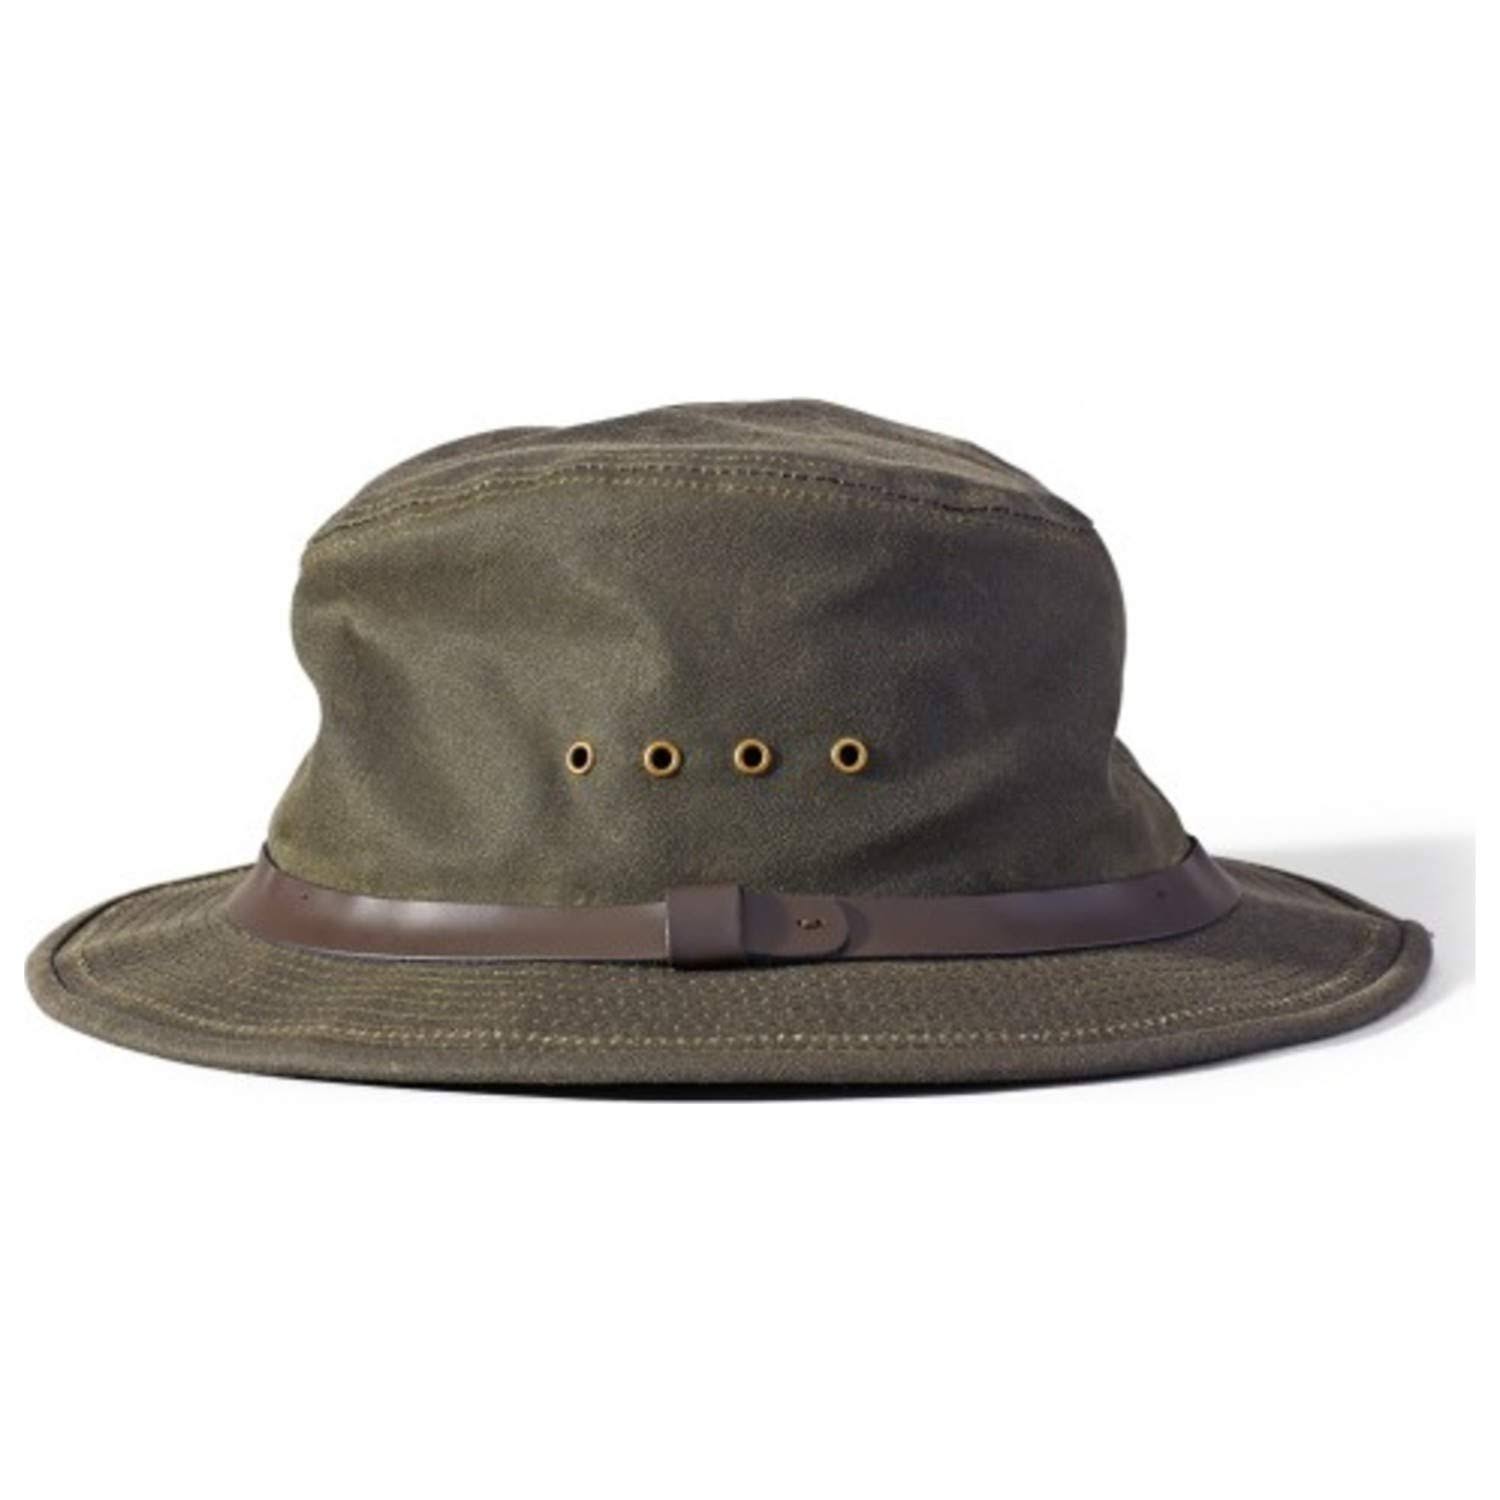 Filson Insulated Packer Hat - XL - Otter Green - WGL-03